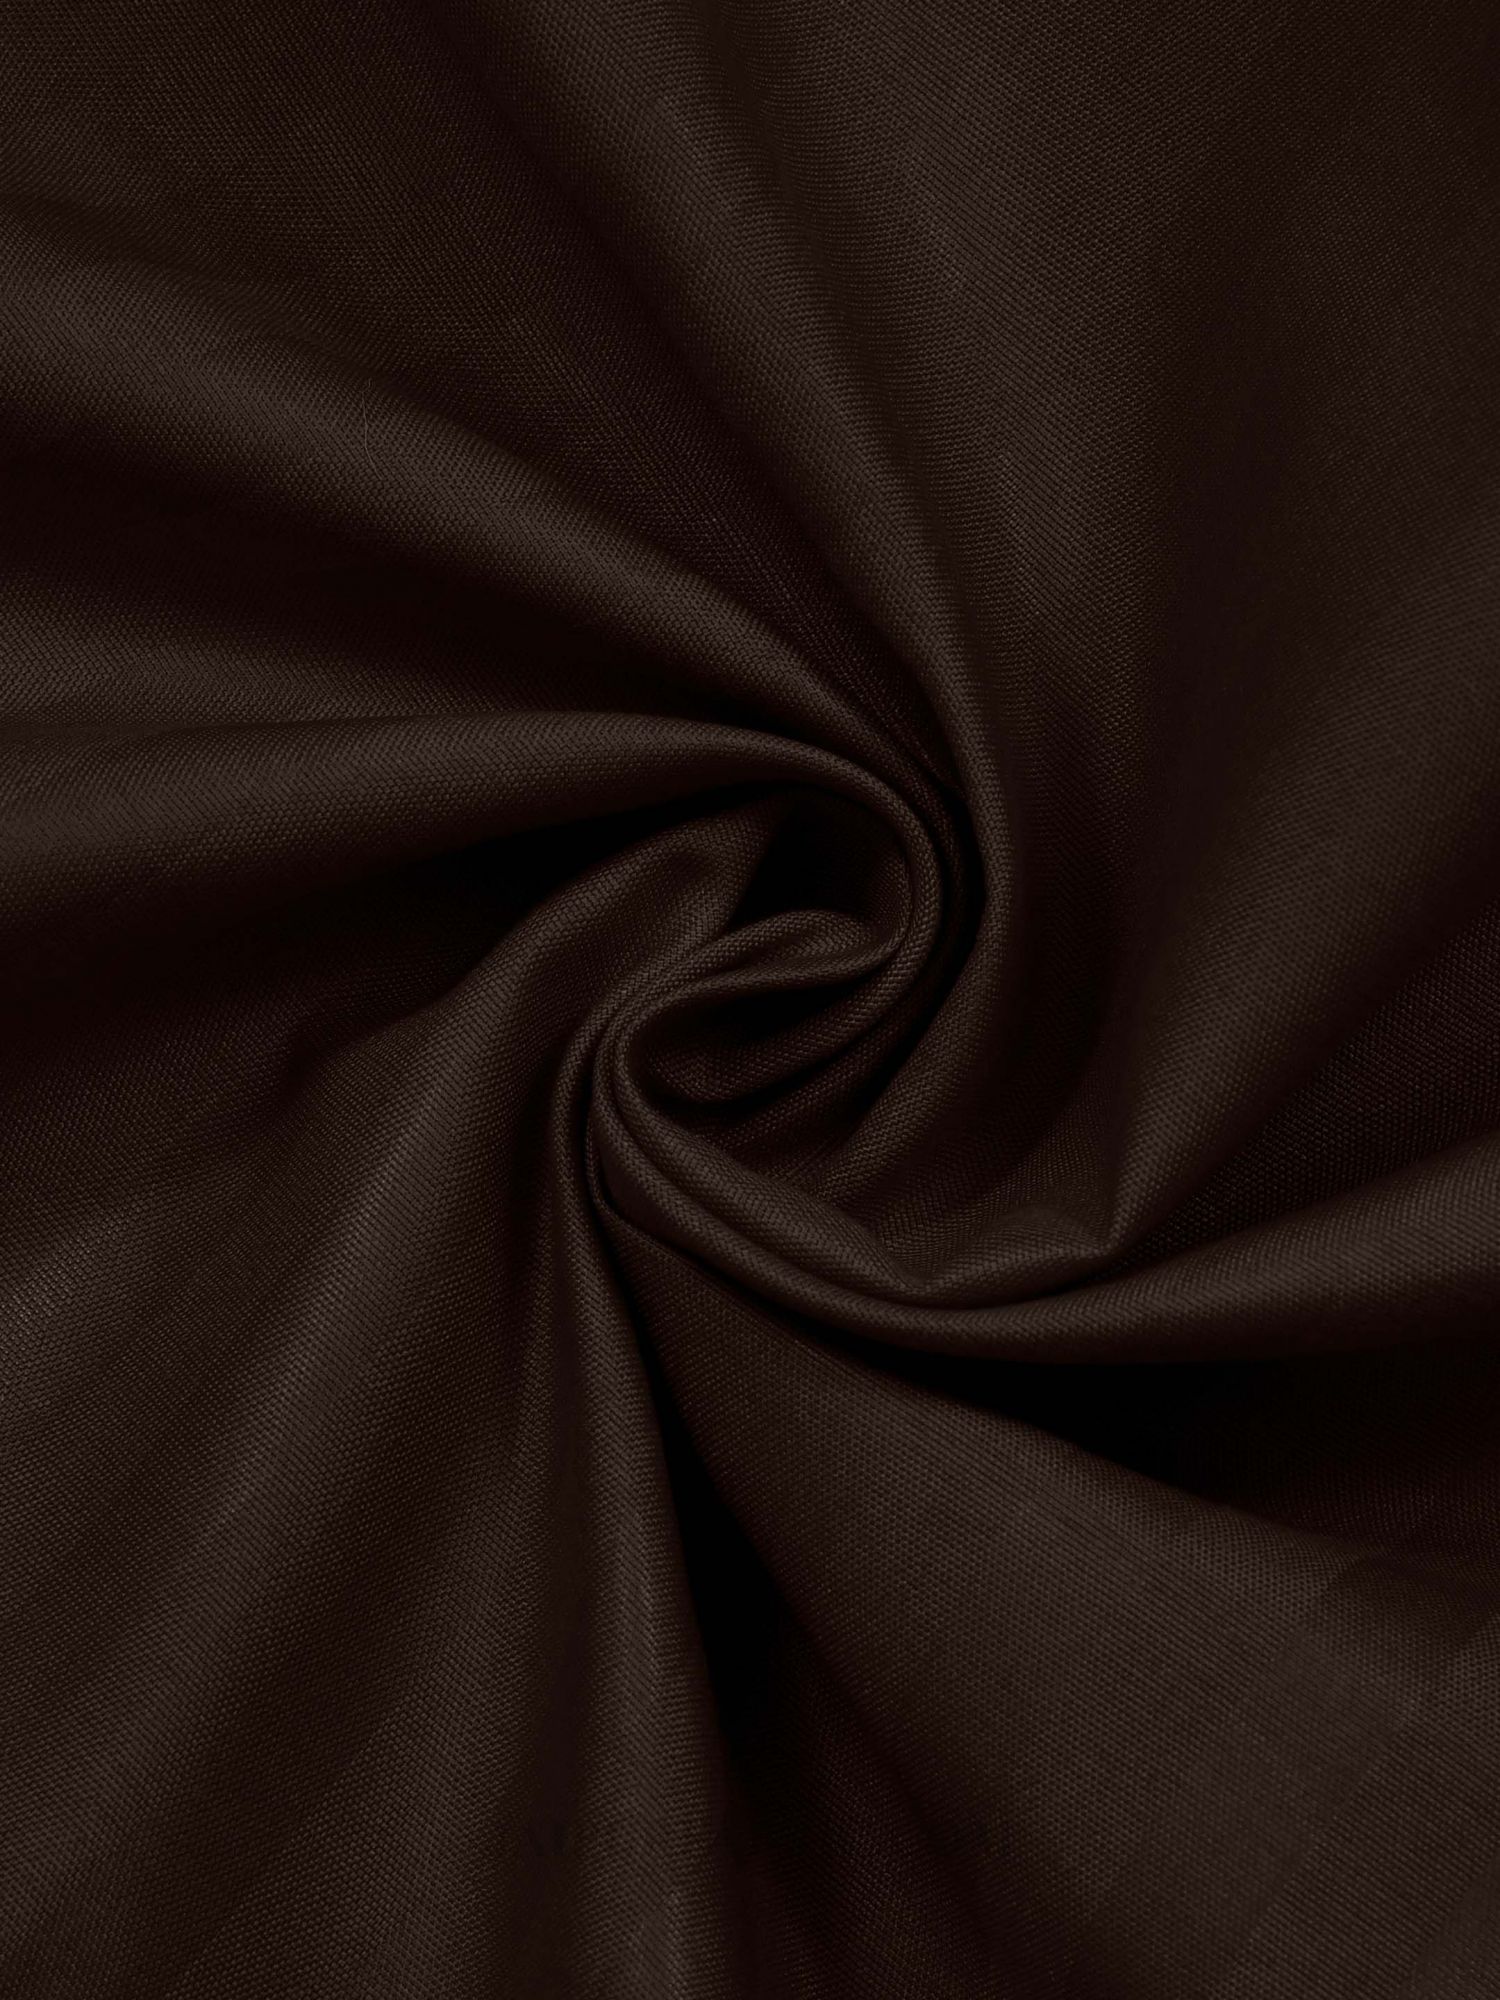 Dark Brown Satin Stripes Single BedSheet